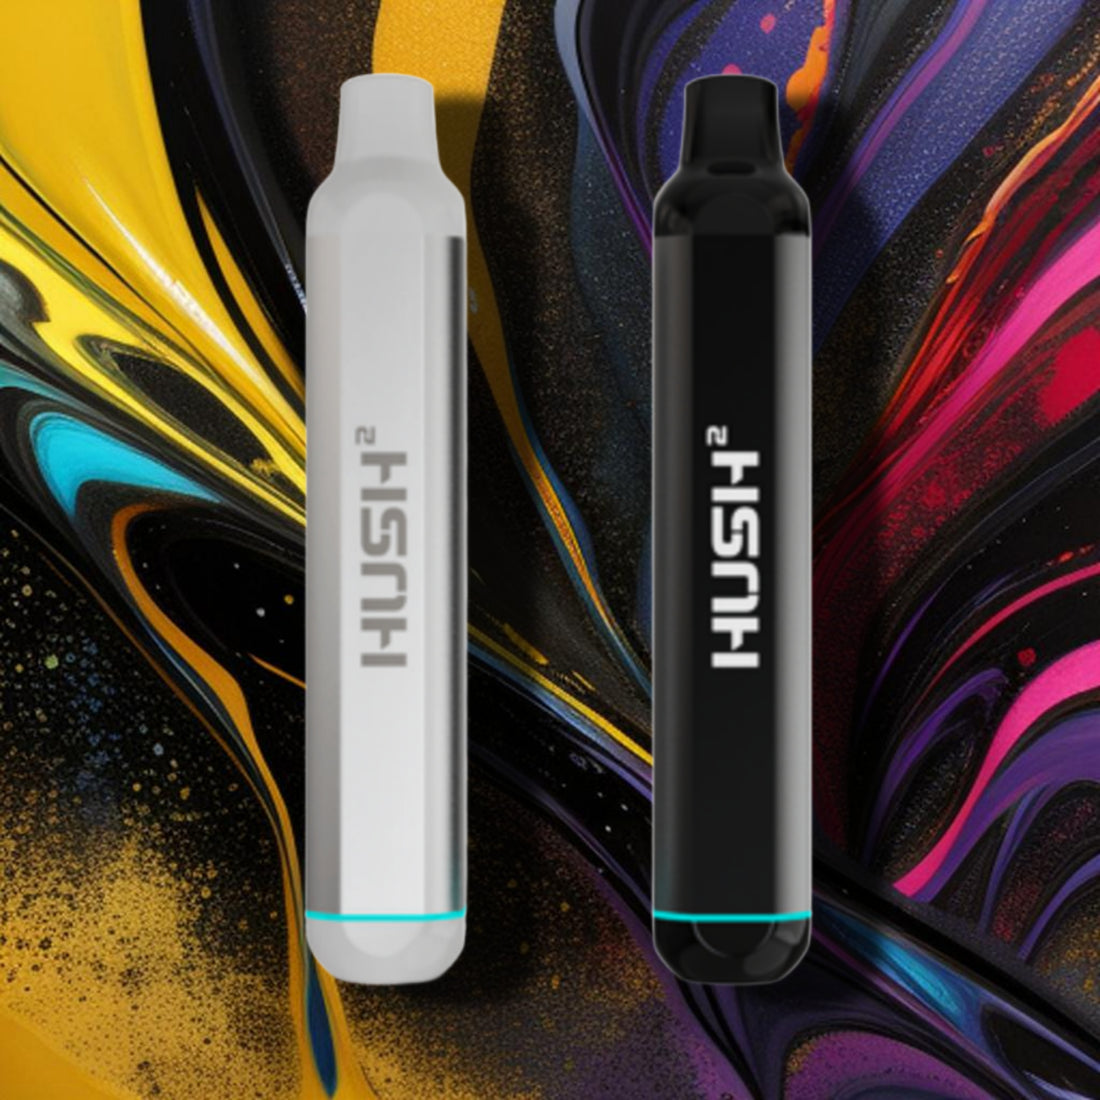 Nova Hush 2 Cannabis Oil Battery (Stick)